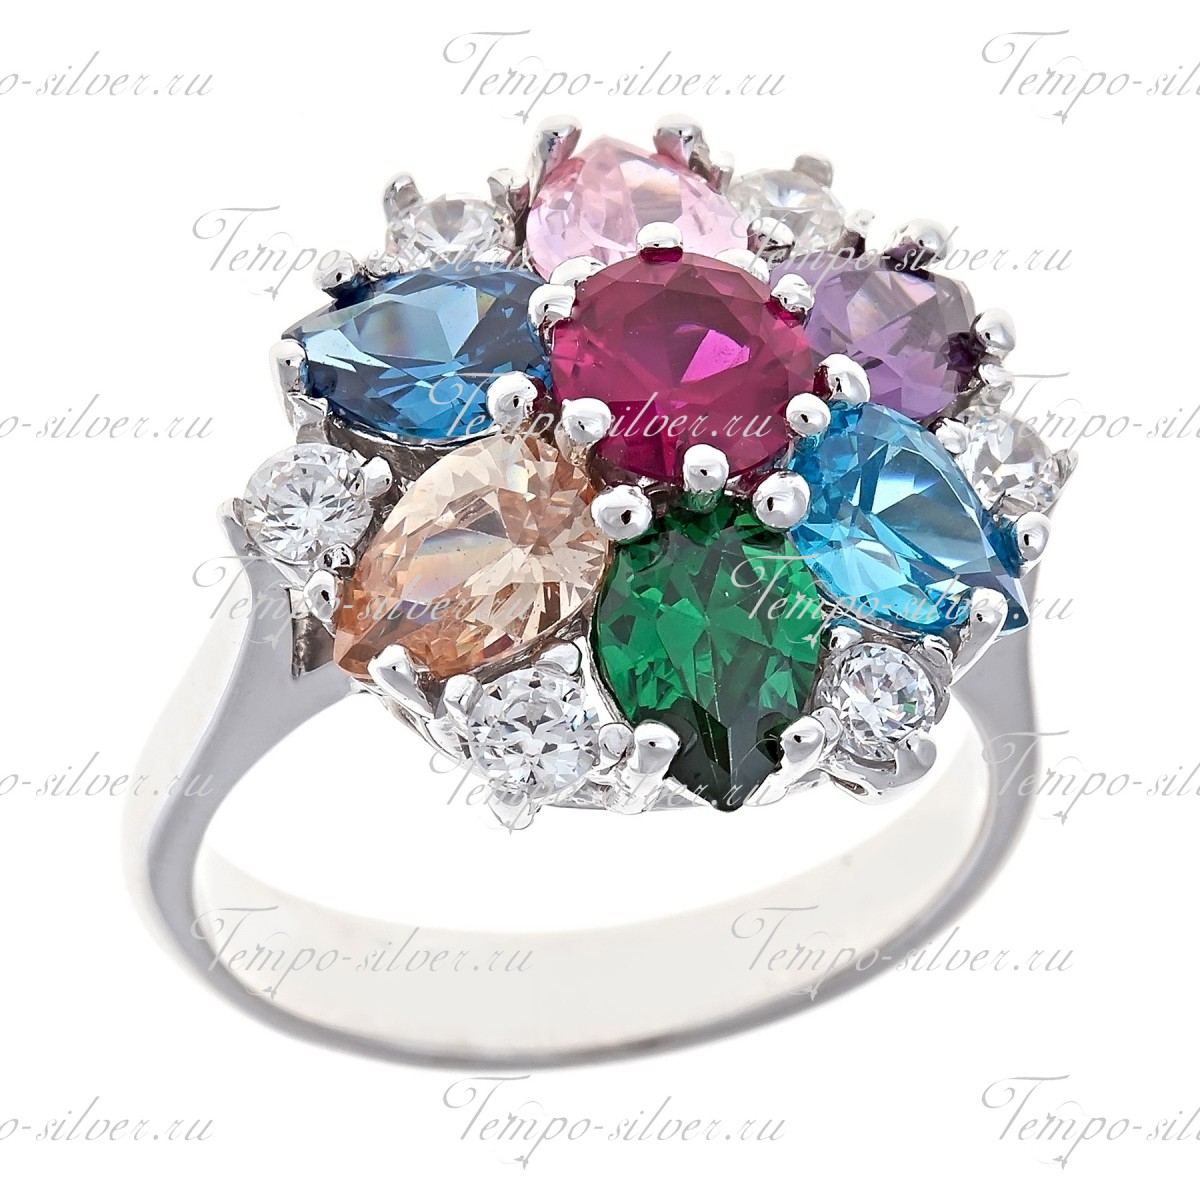 Кольцо серебряное в форме цветка с разноцветными камнями в форме капли